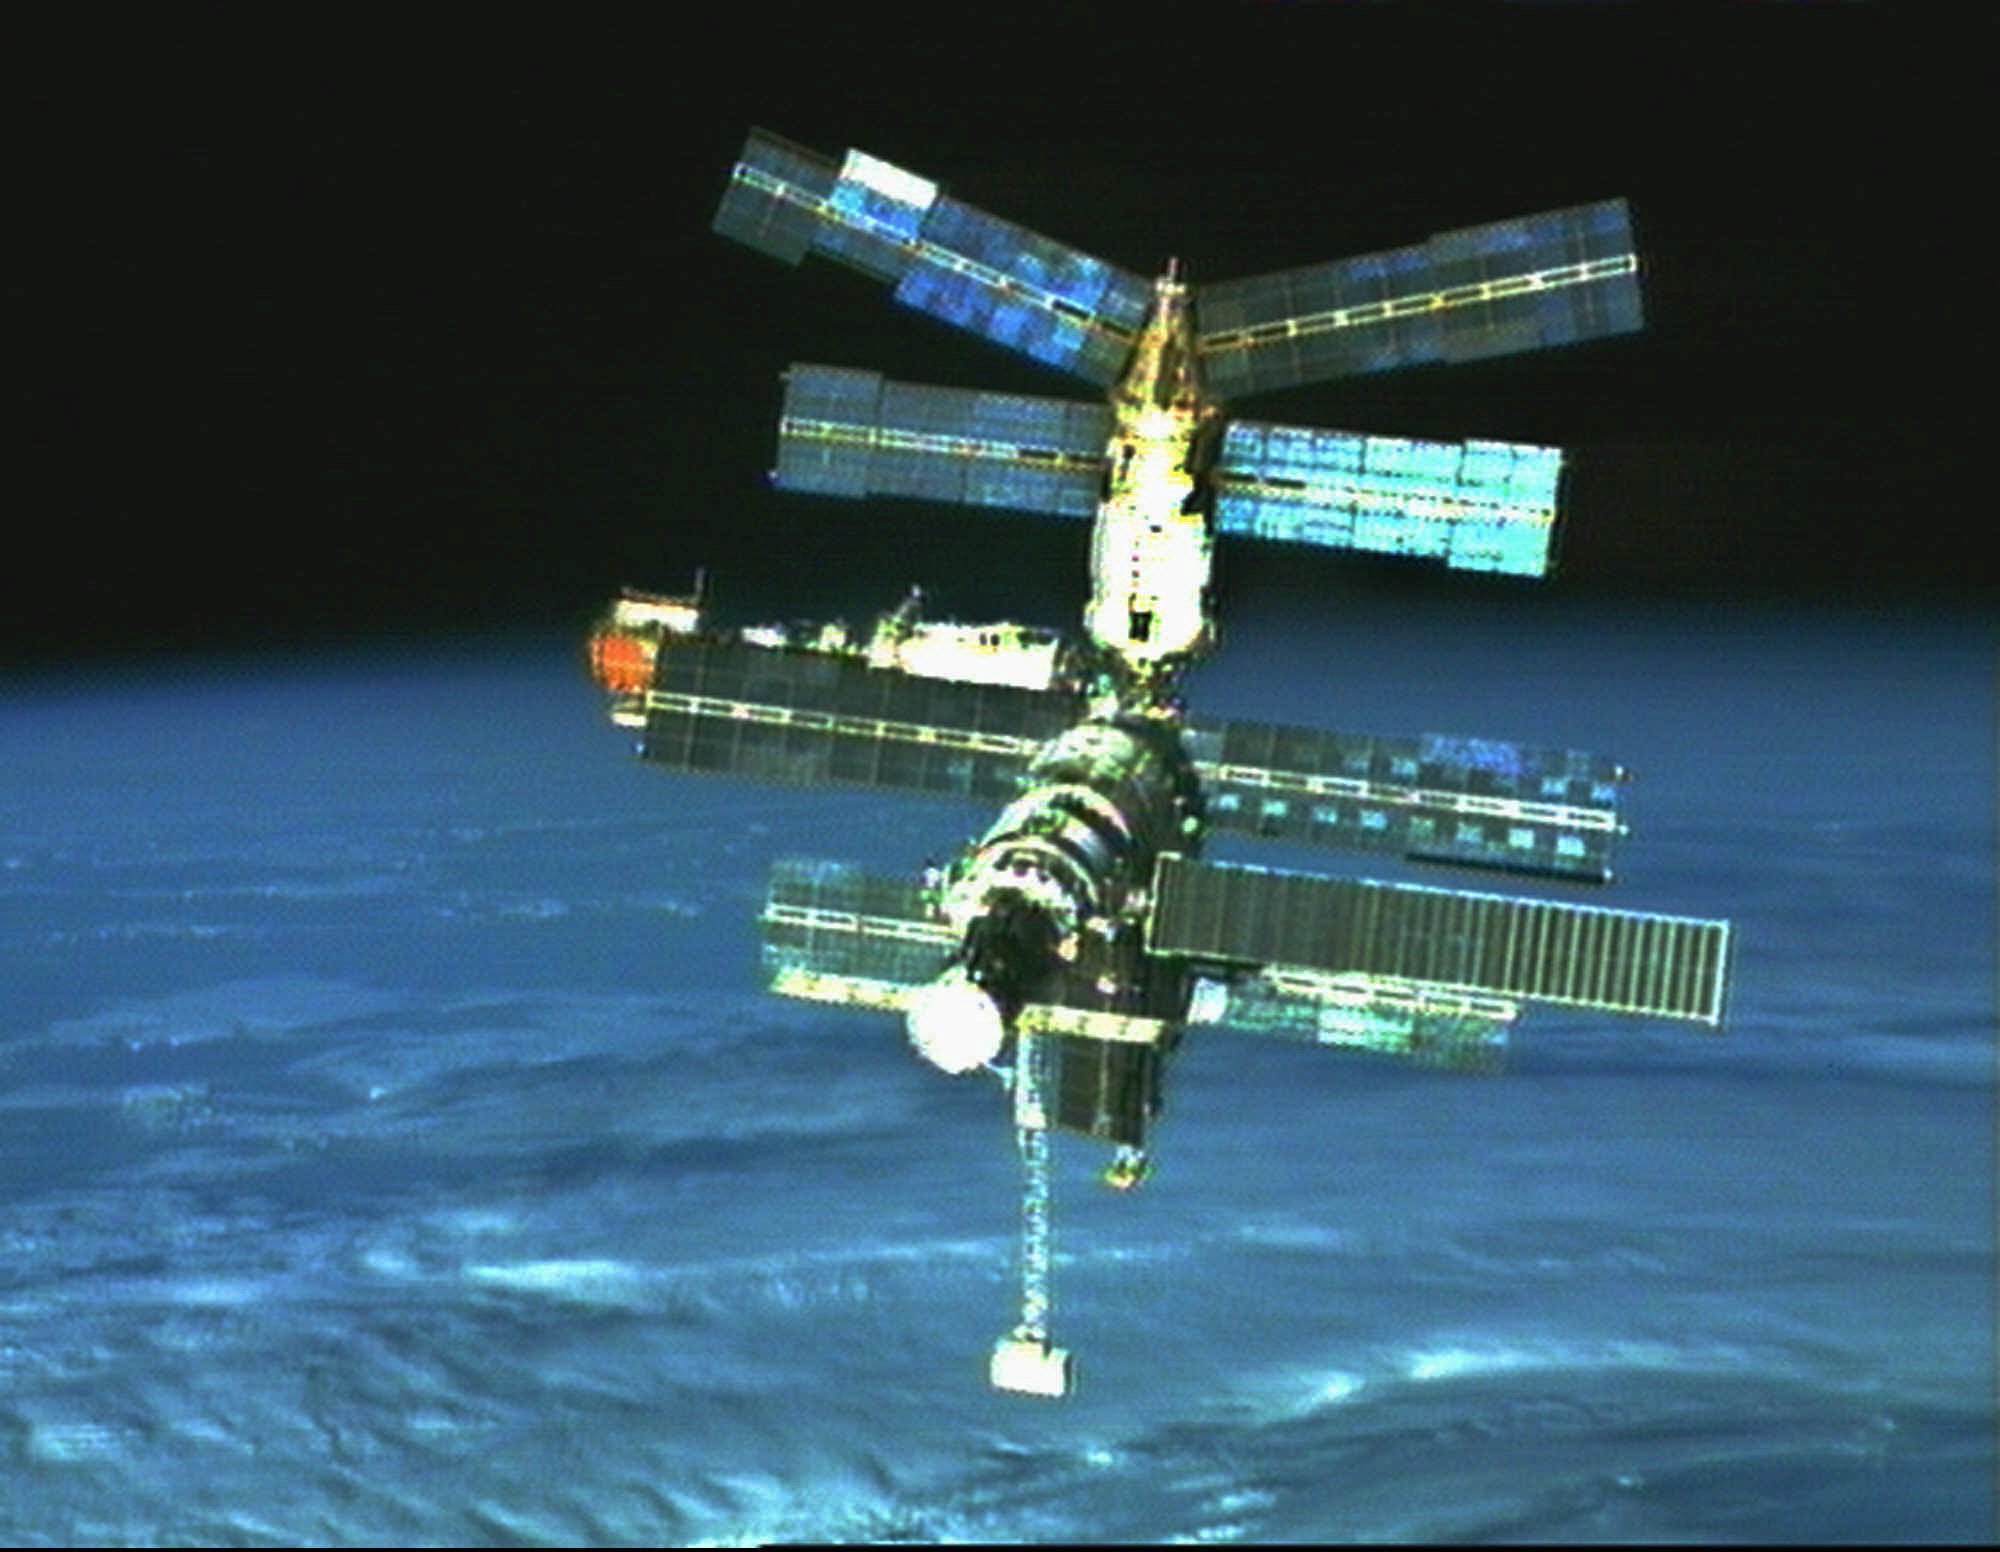 Den ryska rymdstationen Mir är ett av få exempel där man styrt ned skrotet mot Jorden och därmed kunnat veta var det skulle landa.